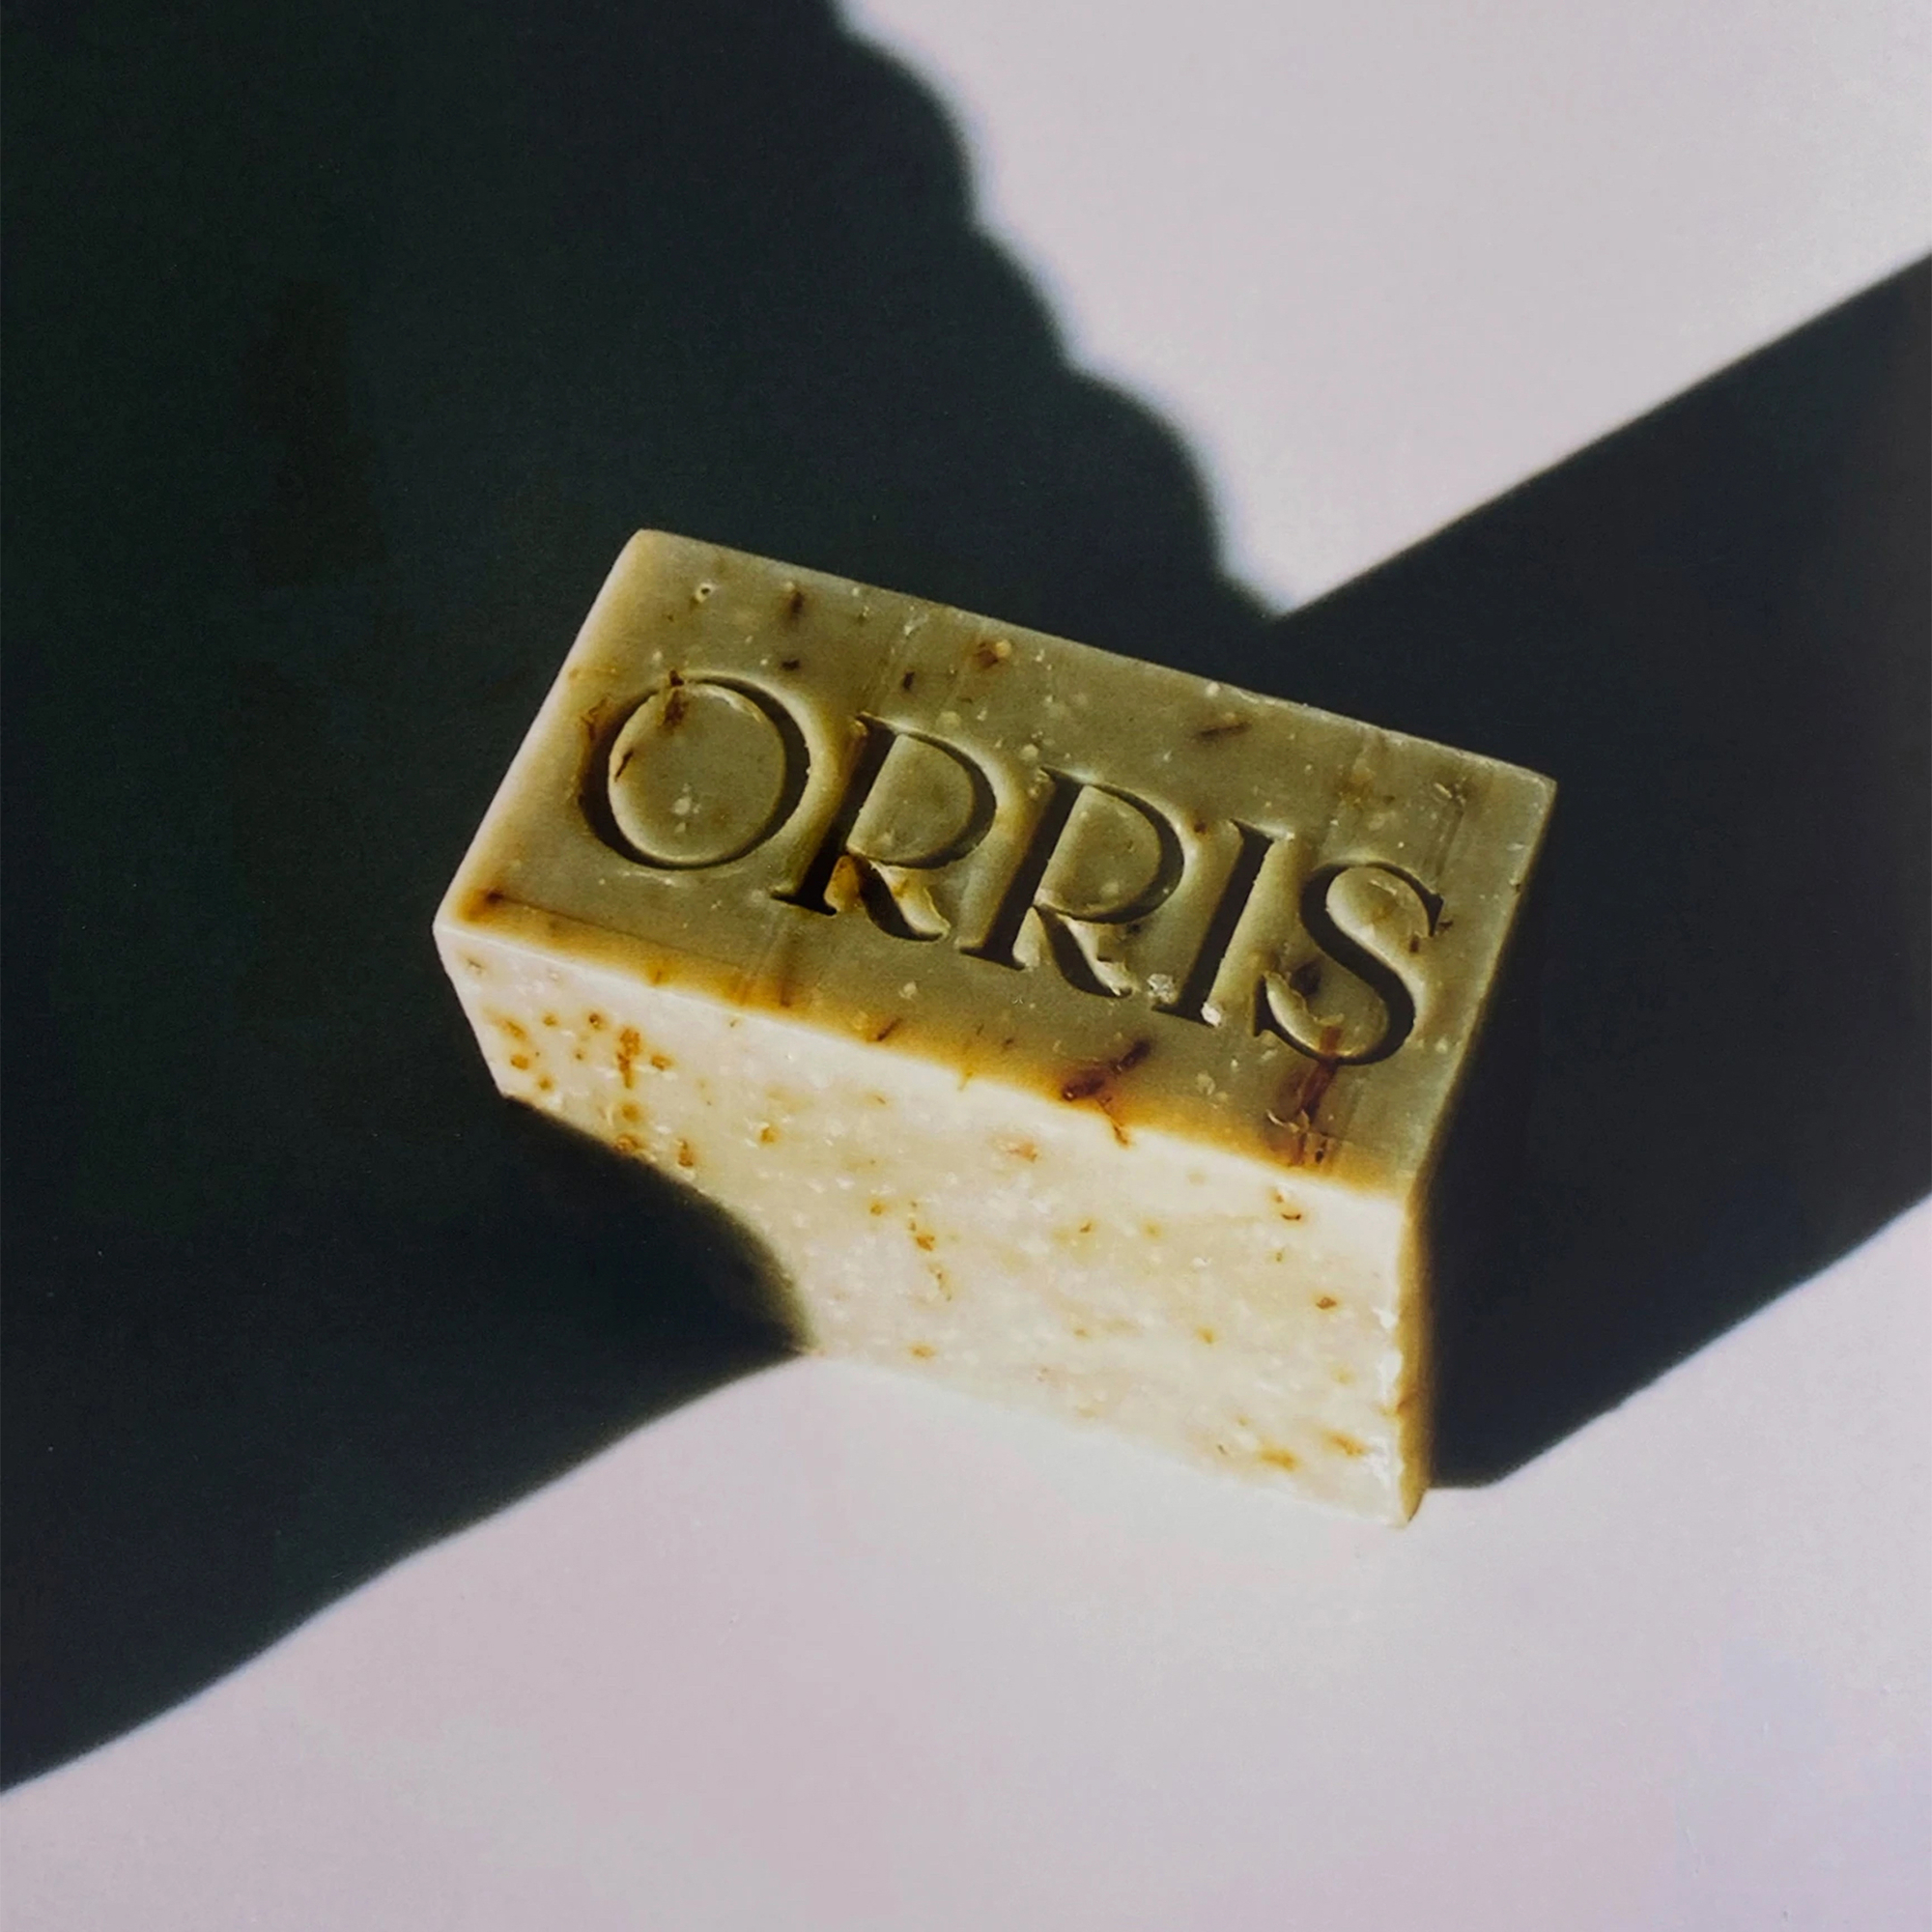 Orris - Szappan normál és kombinált bőrre